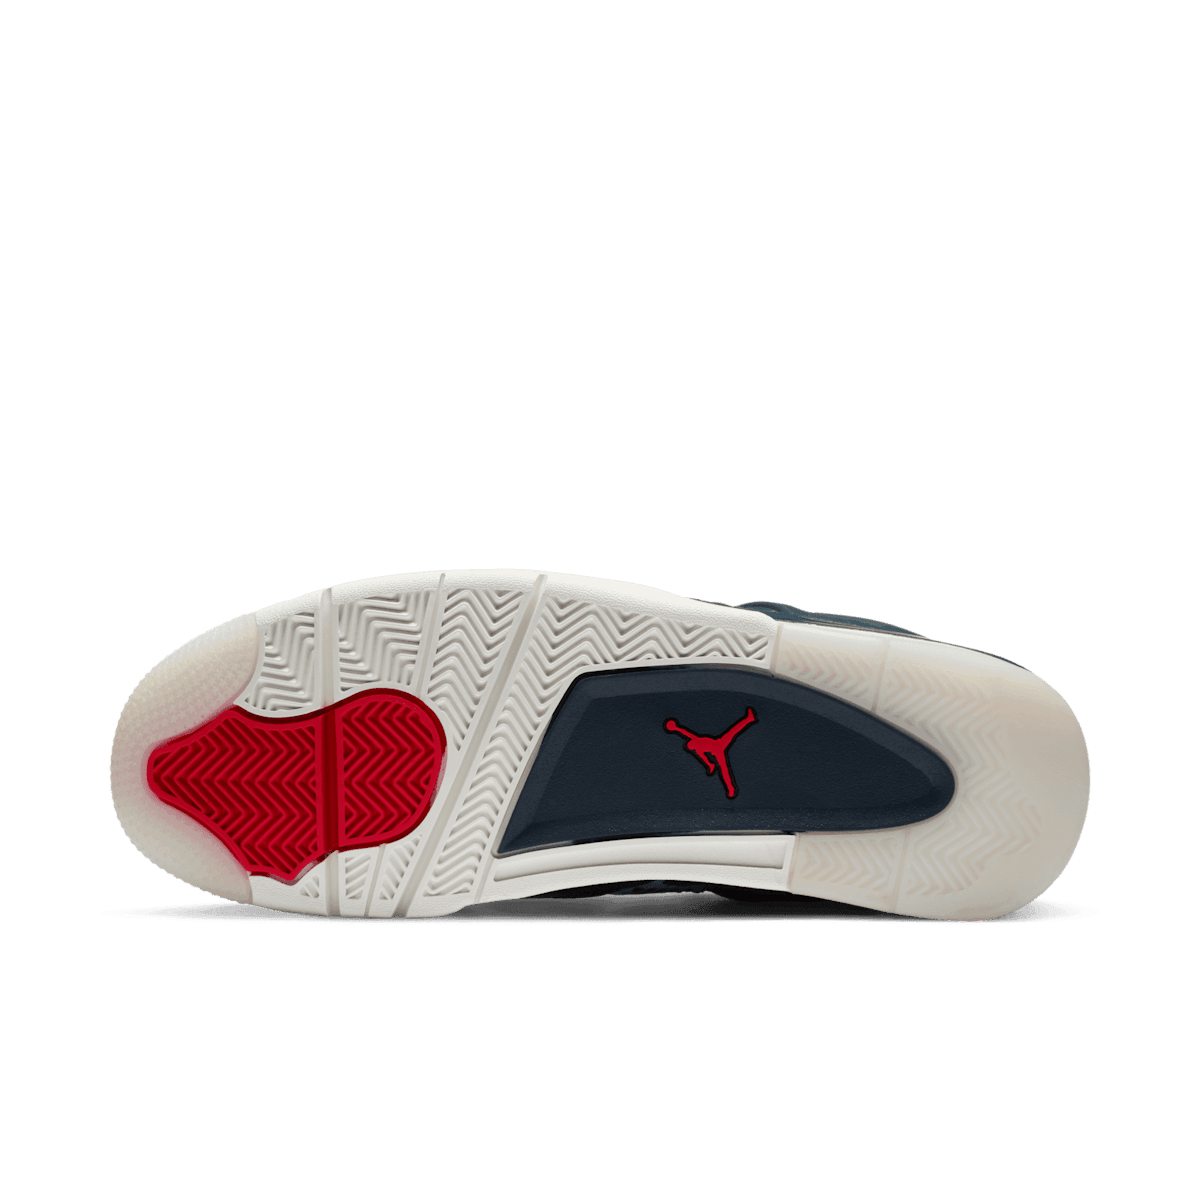 Air Jordan 4 SE Sashiko Angle 0